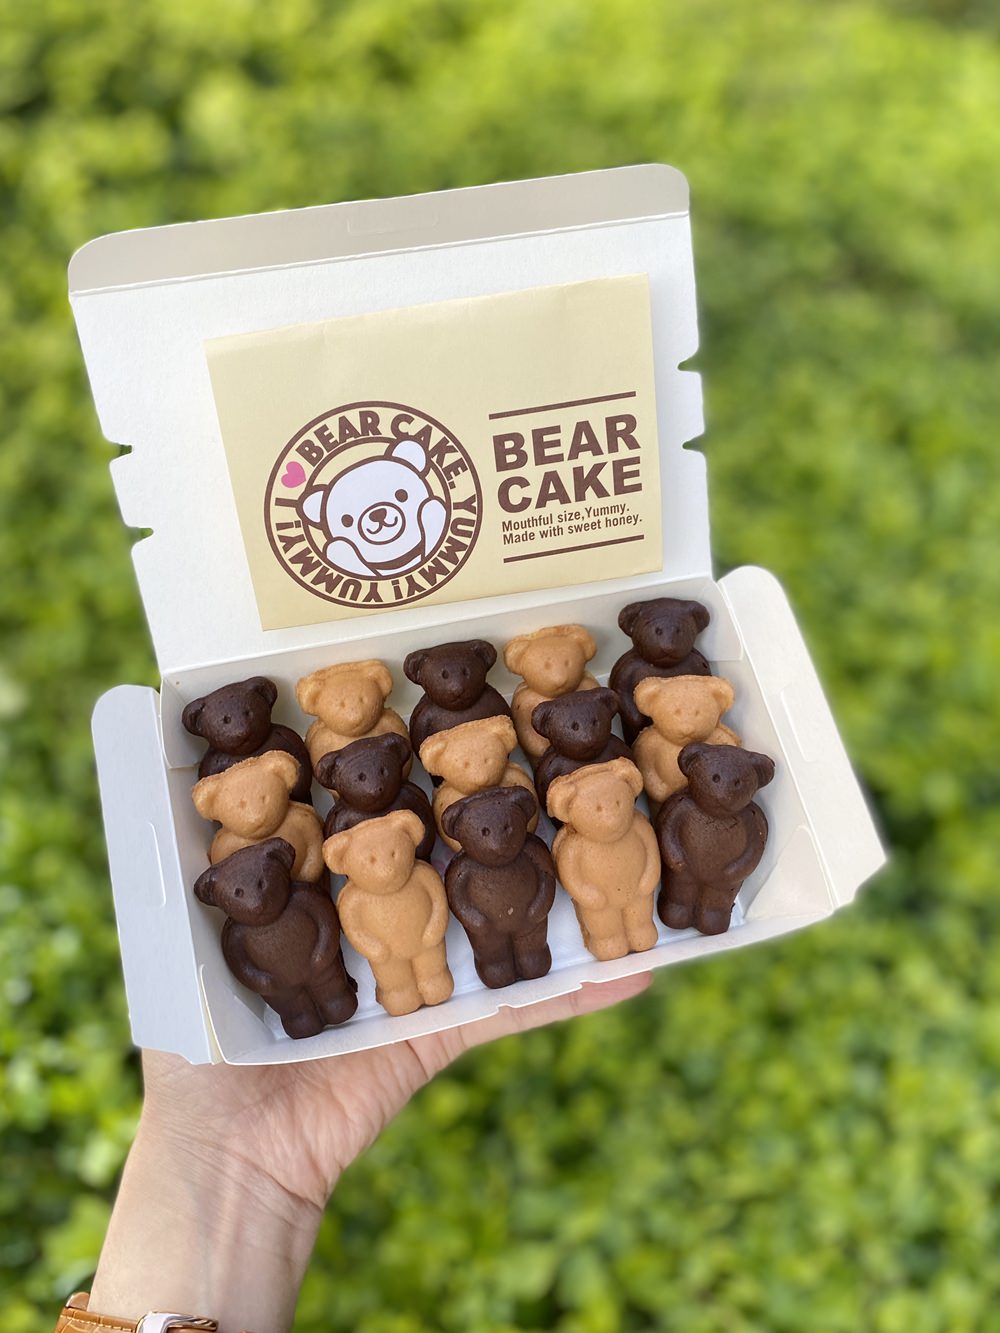 【北車美食】BEARHOLIC熊燒雞蛋糕~來自日本東京快閃名店/超萌超吸睛的熊熊雞蛋糕(還可以加購超可愛提袋)